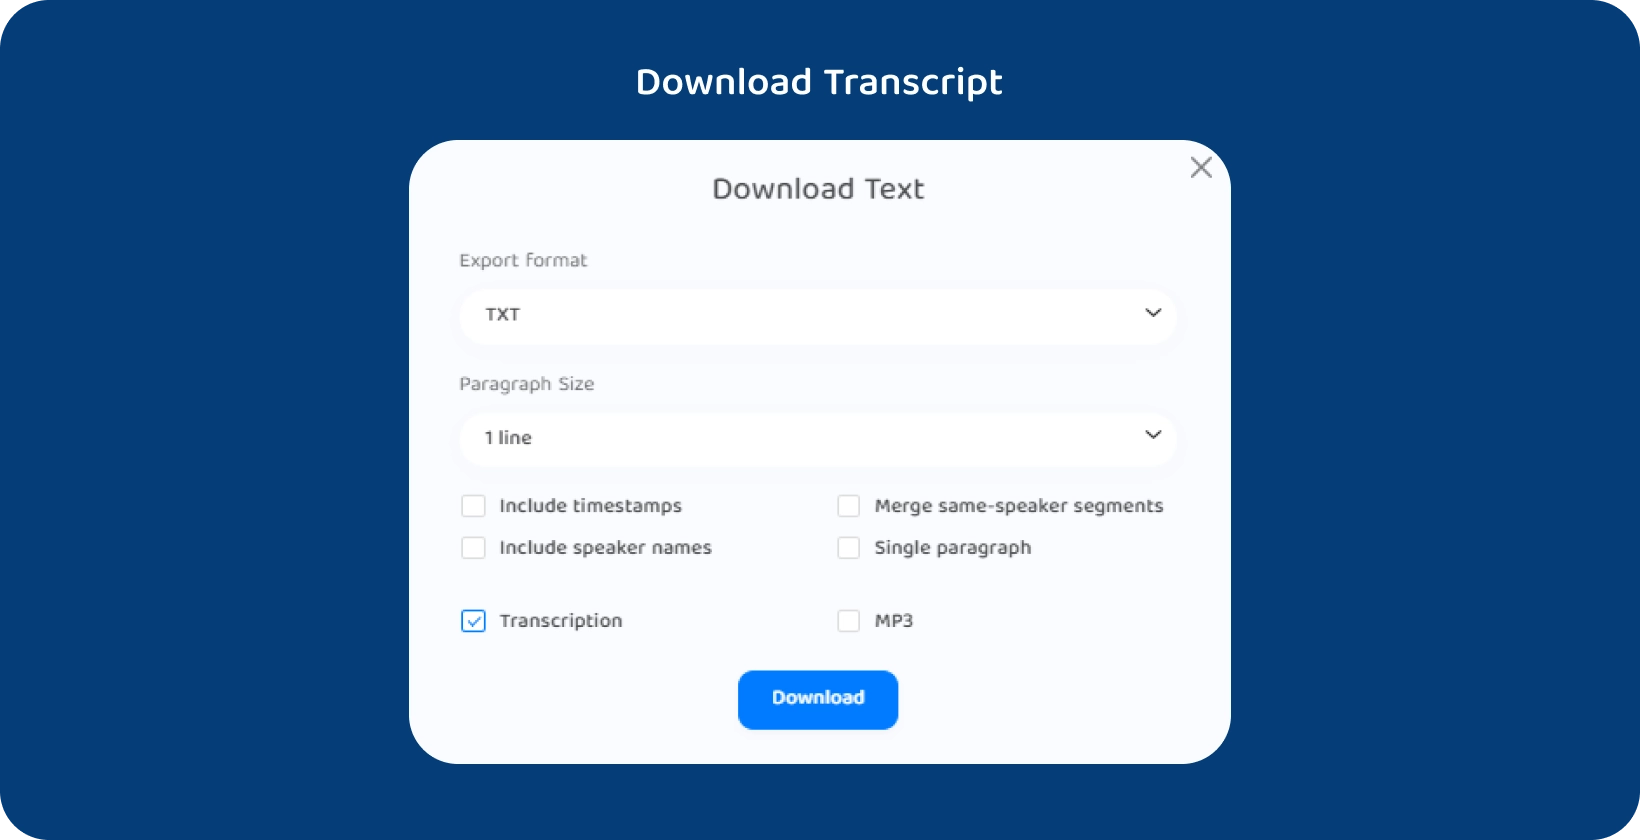 Transkriptor rozhraní zobrazující možnosti stažení textu přepsané přednášky.